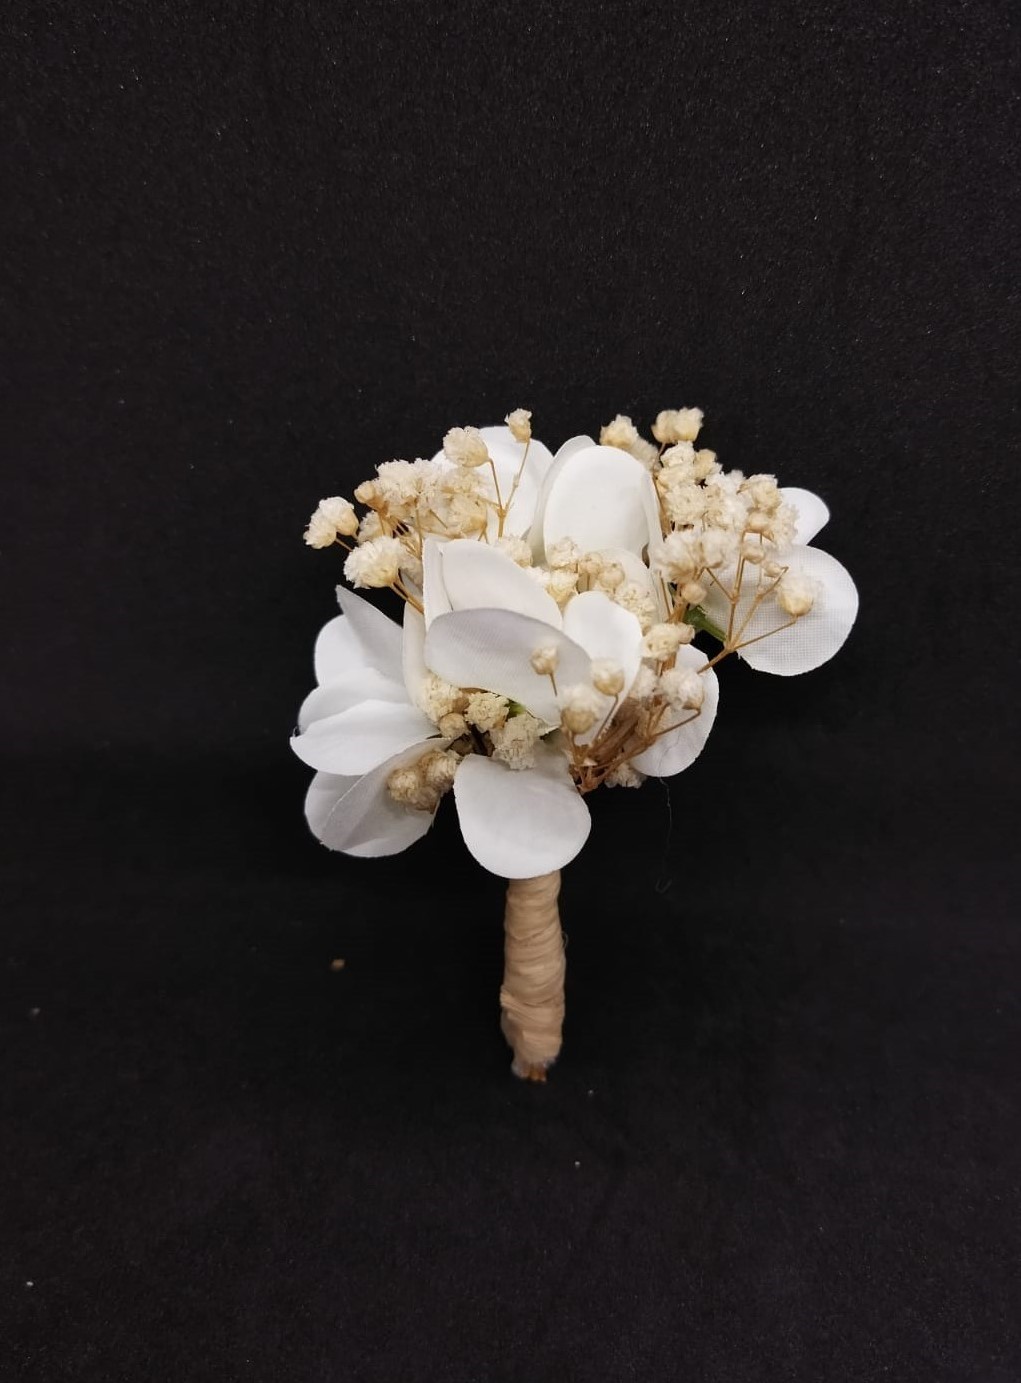 Beyaz Çiçekler Ve Krem Cipsolarla Süslenmiş Damat Yaka Çiçeği 